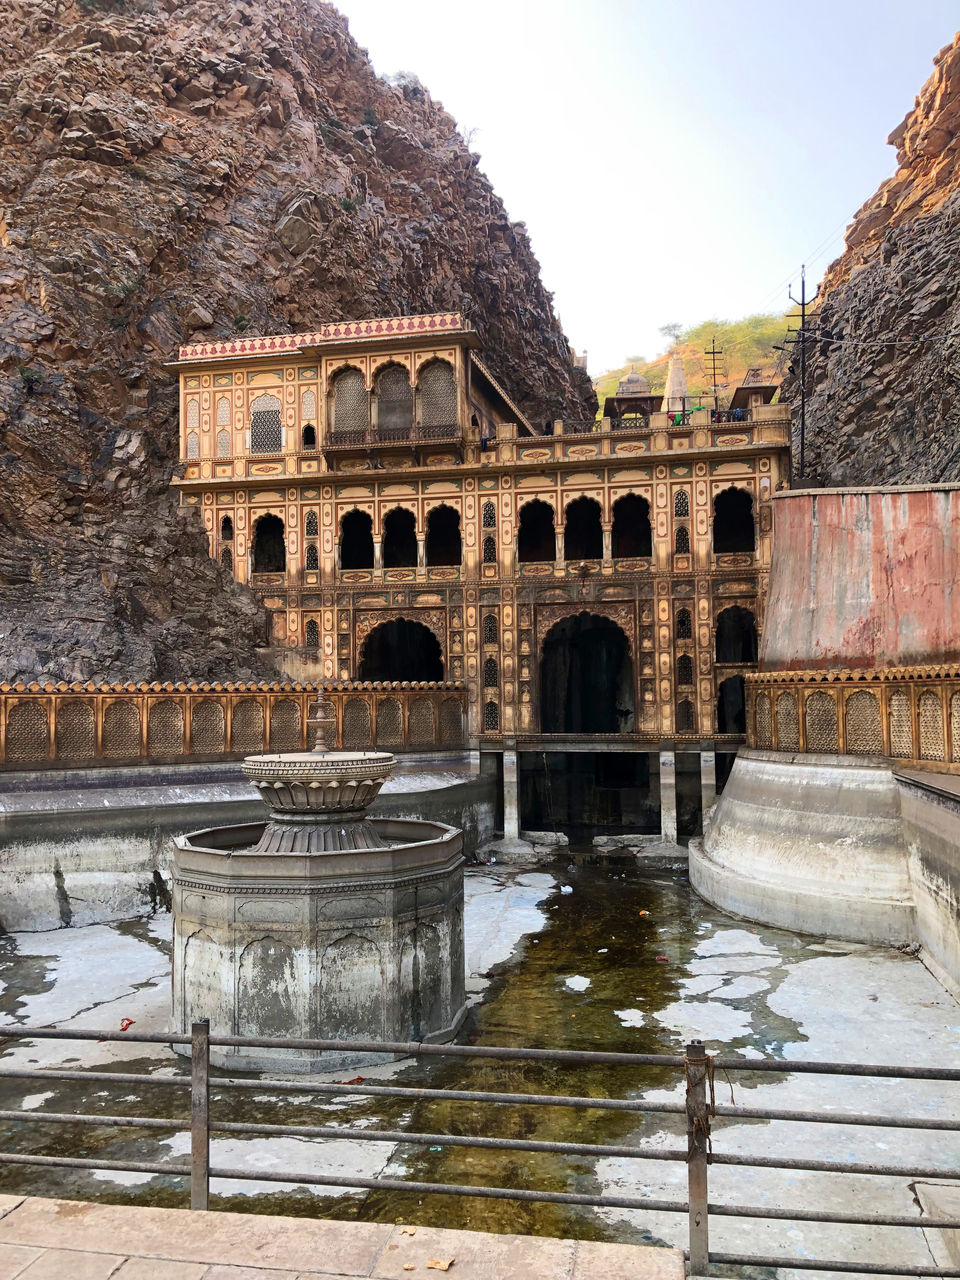 Photo of Galta Ji Temple, Galta Ji, Jaipur, Rajasthan, India by Abagfullofmaps